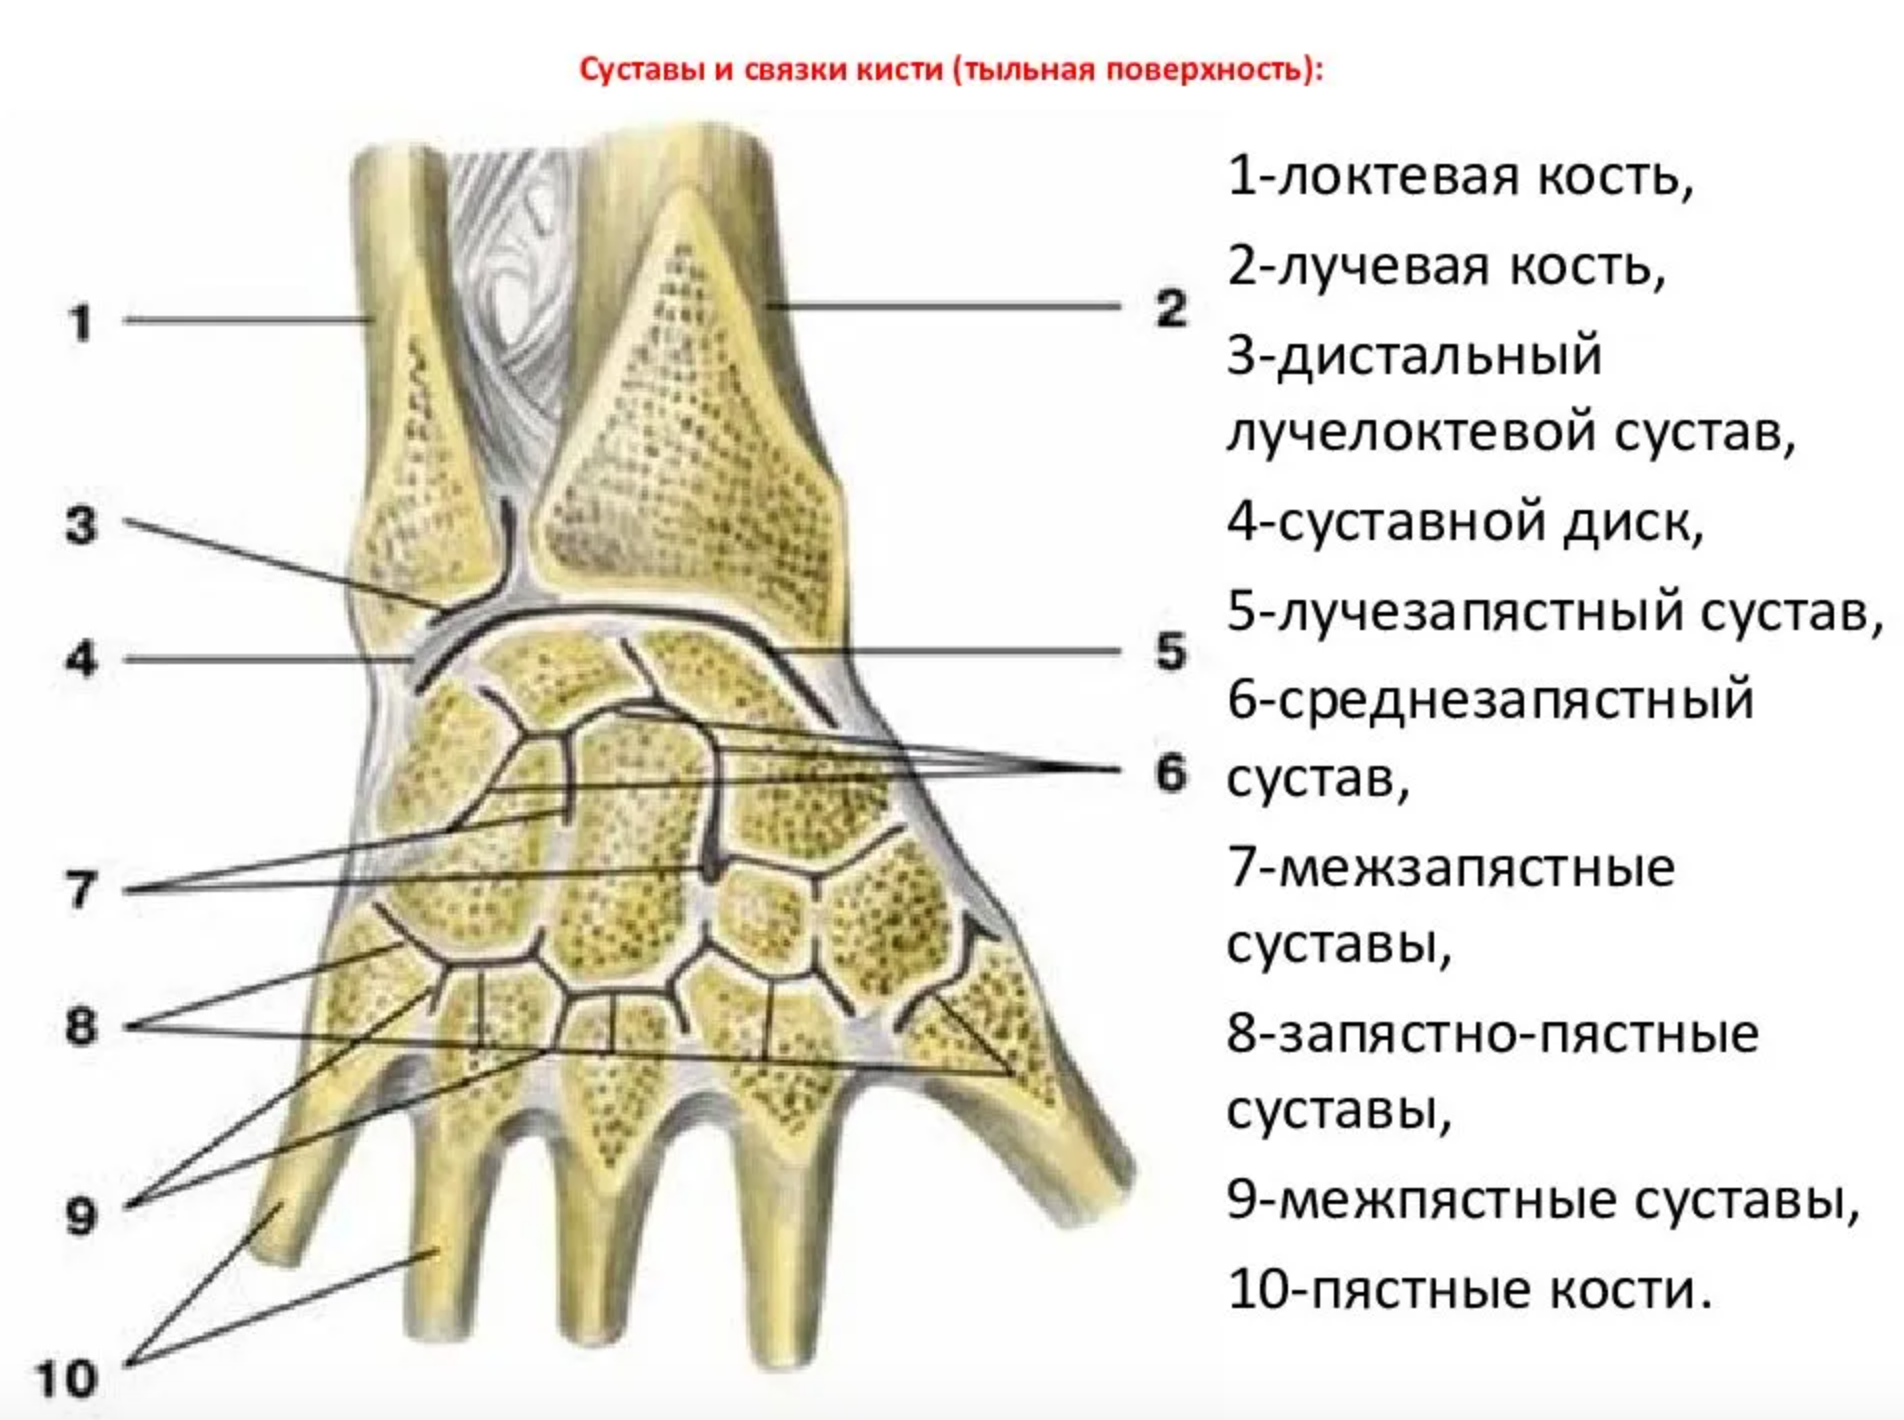 Поверхность запястья. Суставной диск лучезапястного сустава. Дистальный лучелоктевой сустав анатомия связки. Среднезапястный сустав связки. Лучезапястный сустав анатомия суставные поверхности.